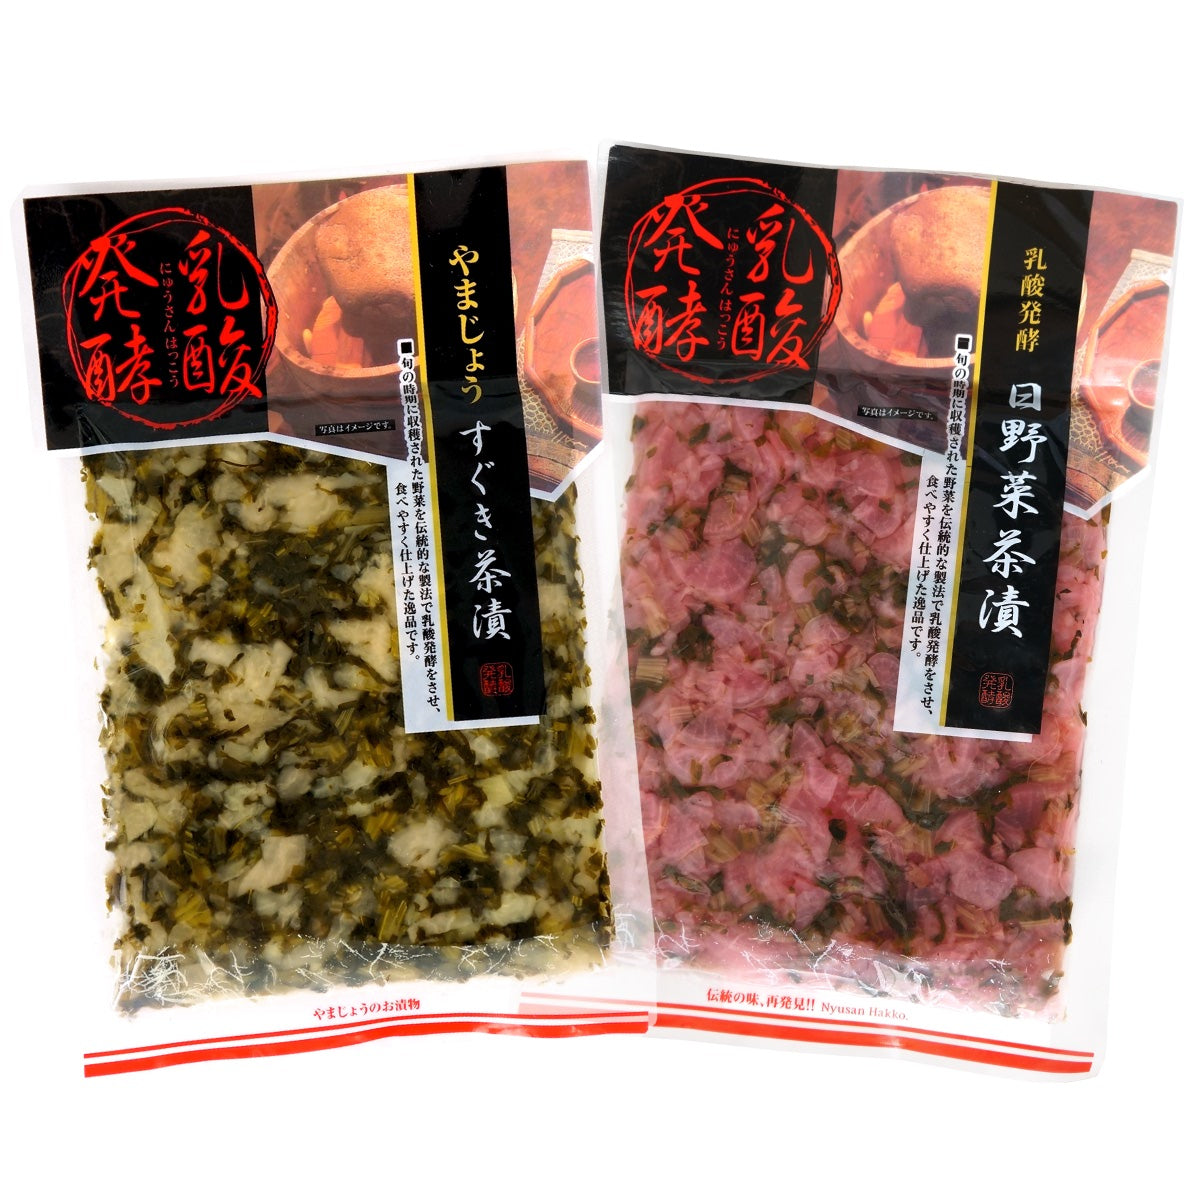 京たより 乳酸発酵 漬物 すぐき茶漬 日野菜茶漬 メール便 送料無料